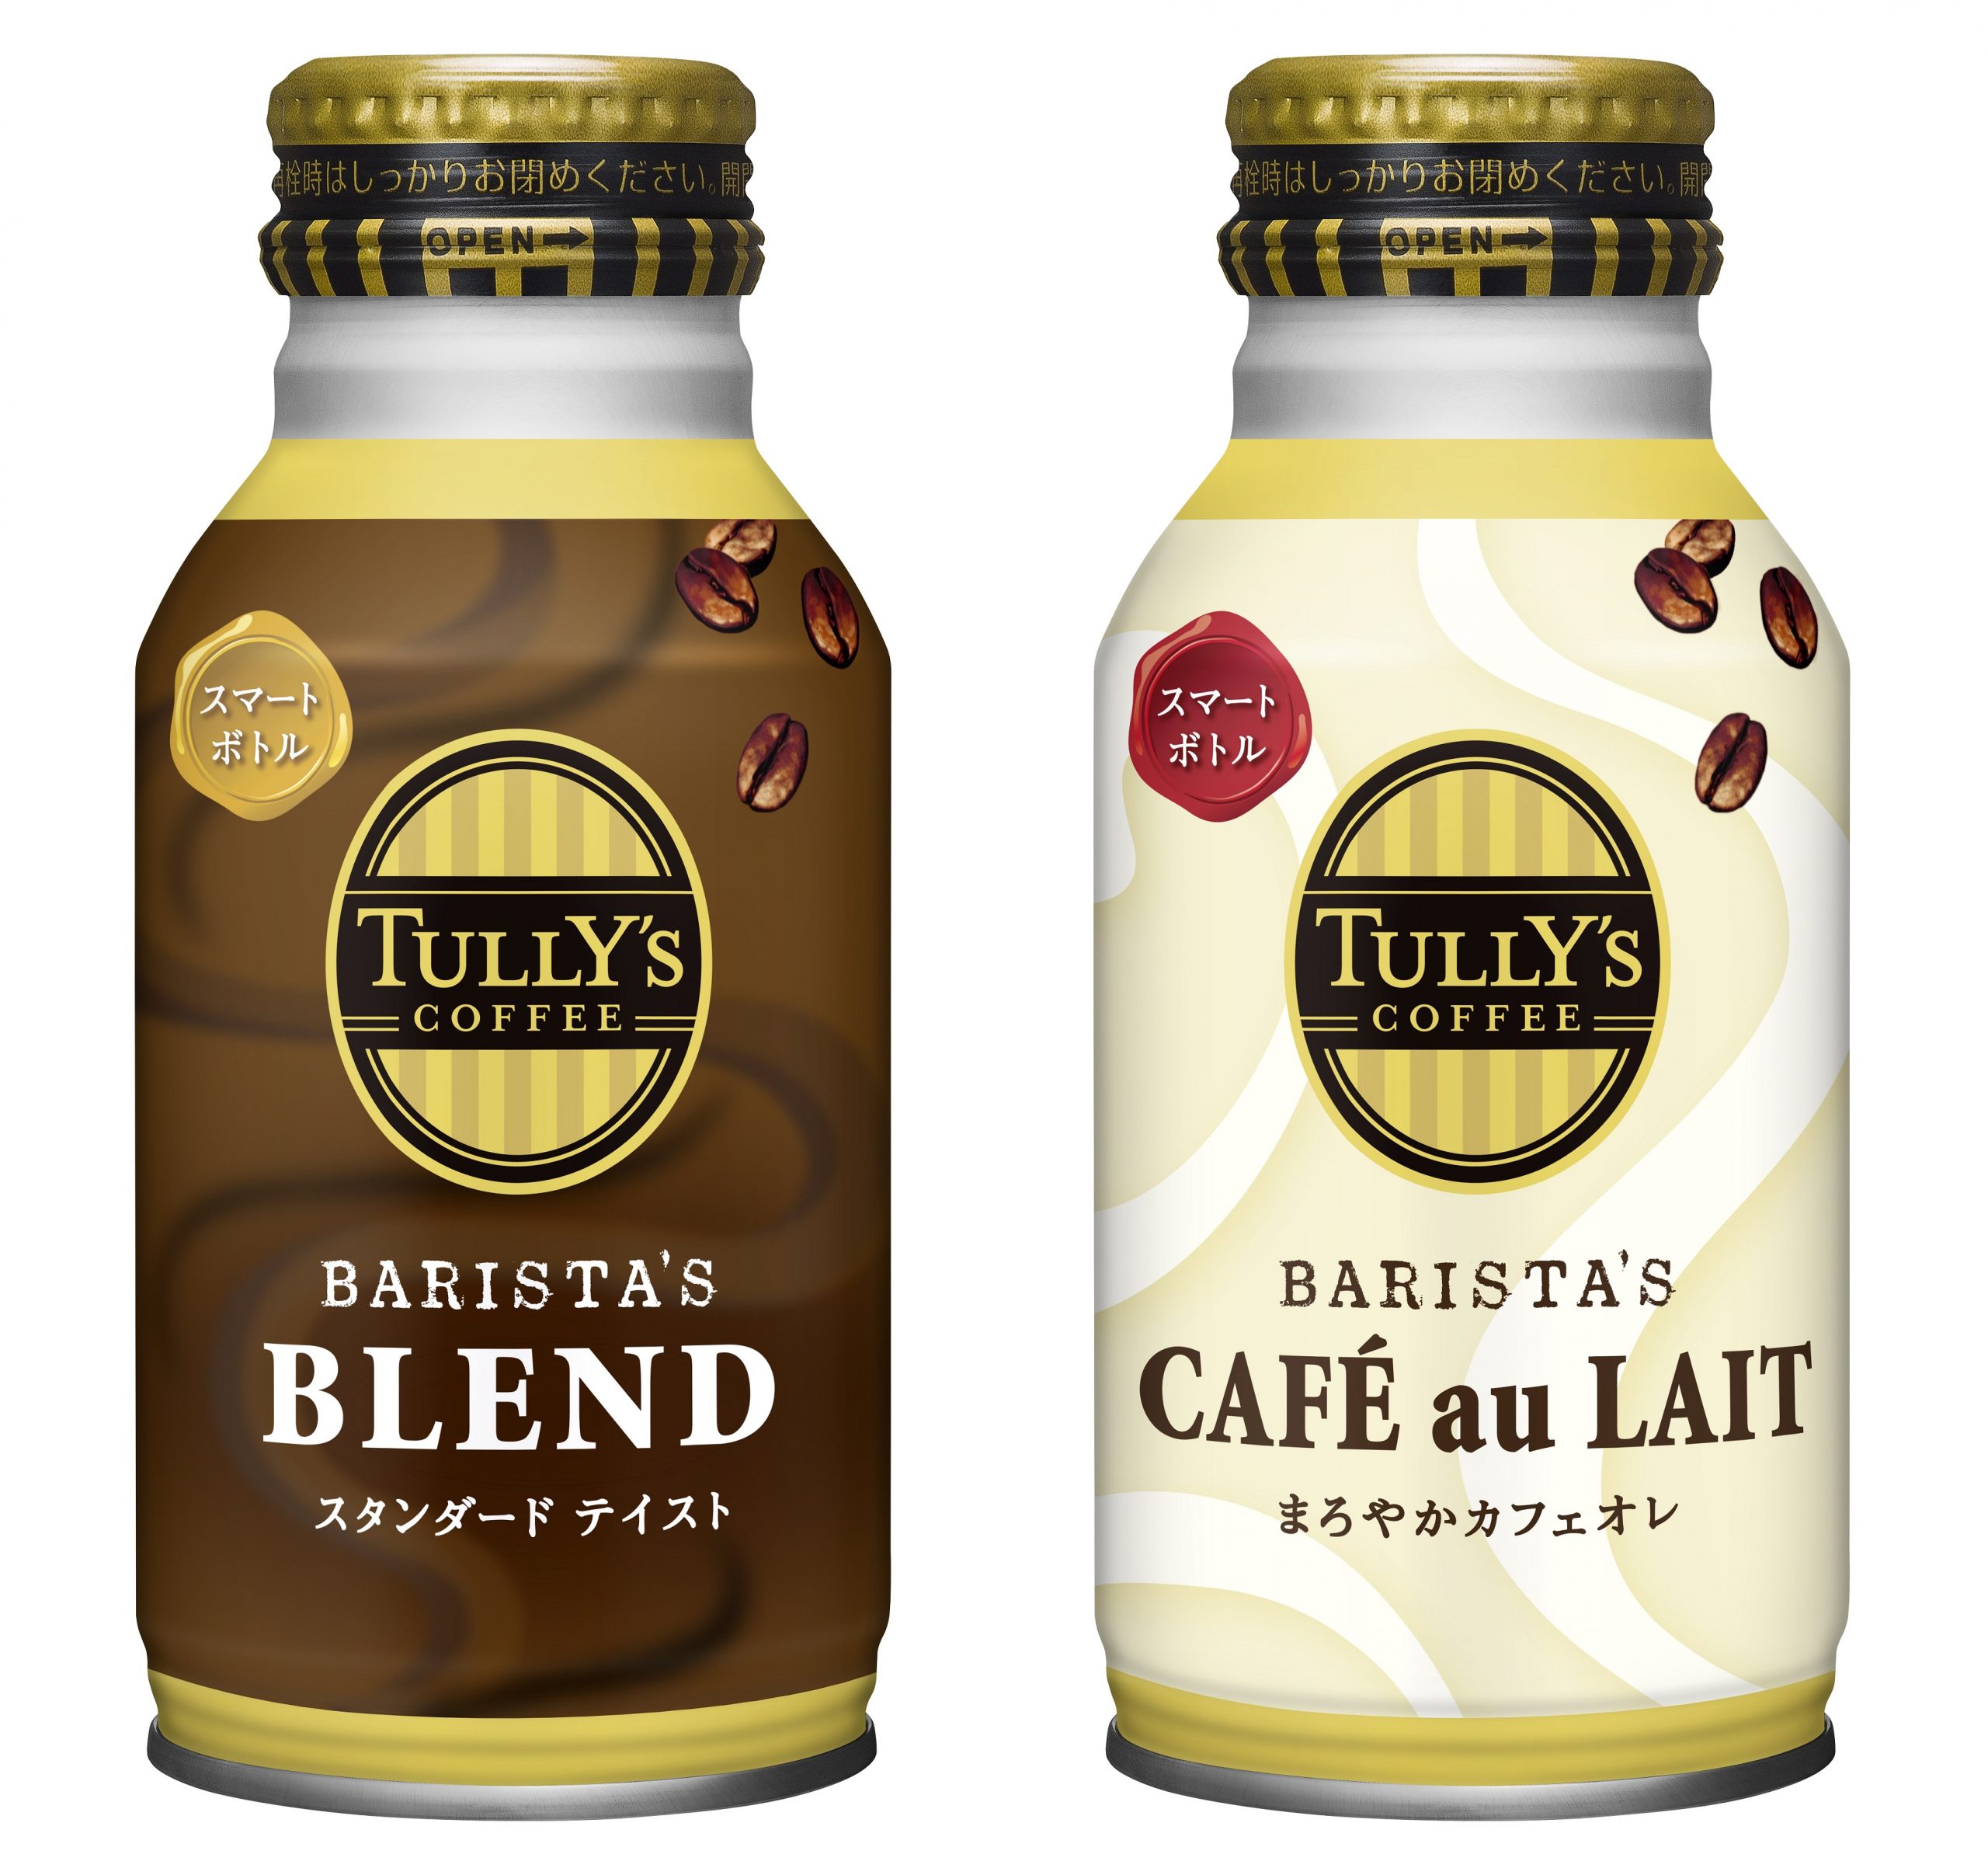 左から「TULLY'S COFFEE BARISTA’S BLEND」「同 BARISTA’S CAFÉ au LAIT」